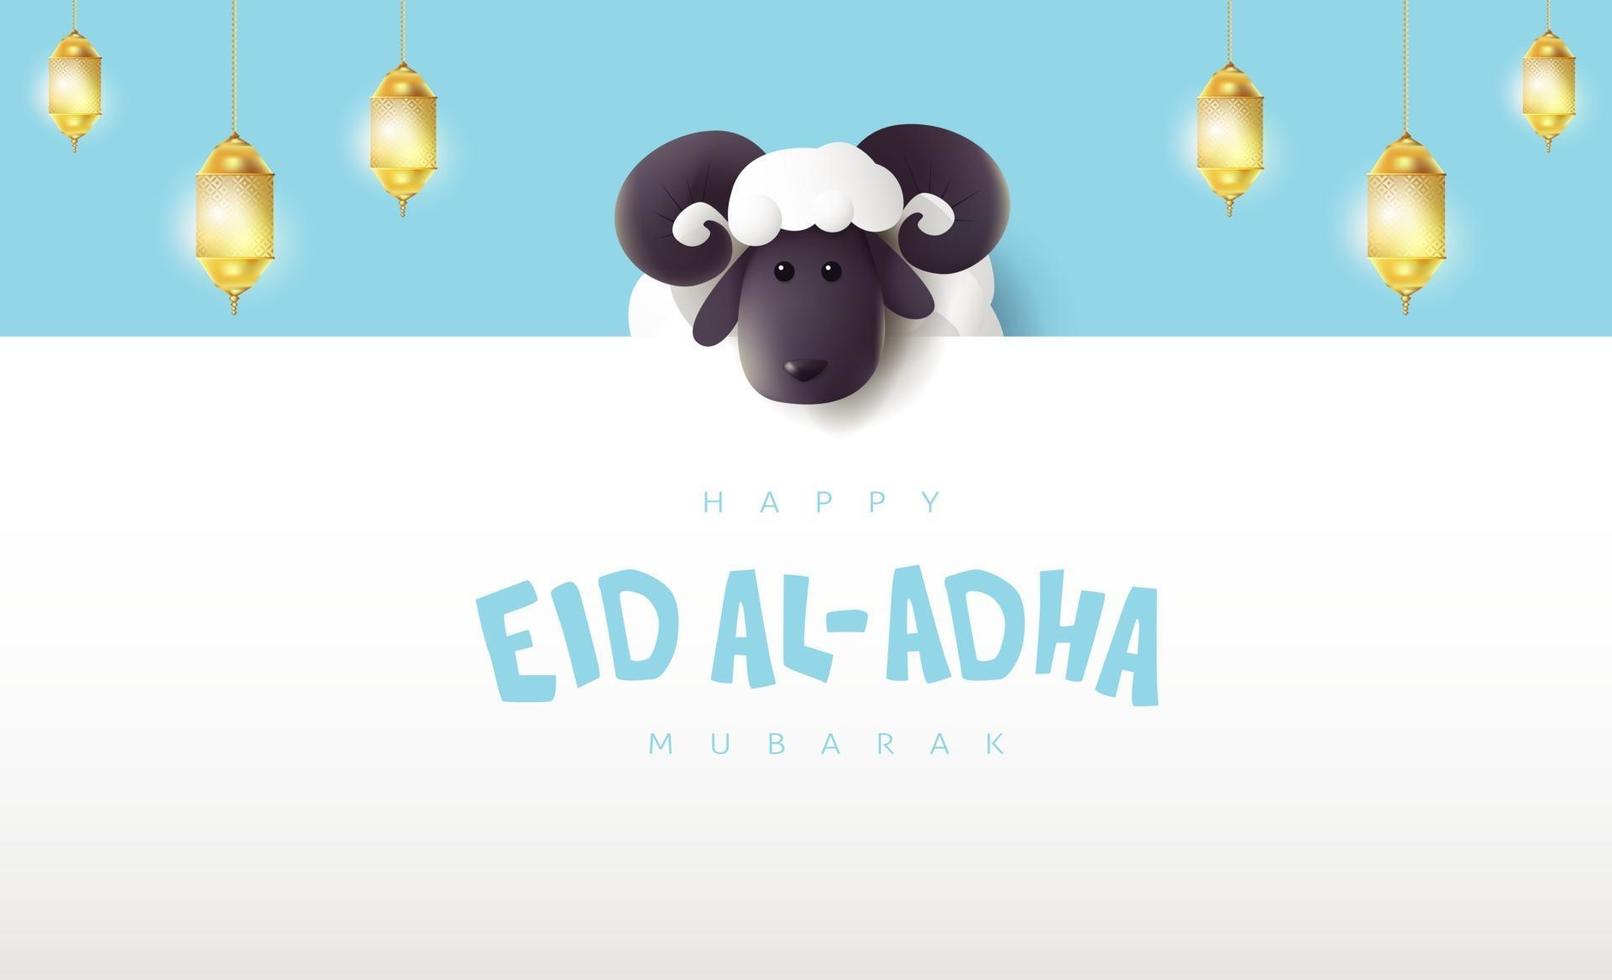 eid al adha mubarak la celebración de la caligrafía del festival de la comunidad musulmana con ovejas blancas vector